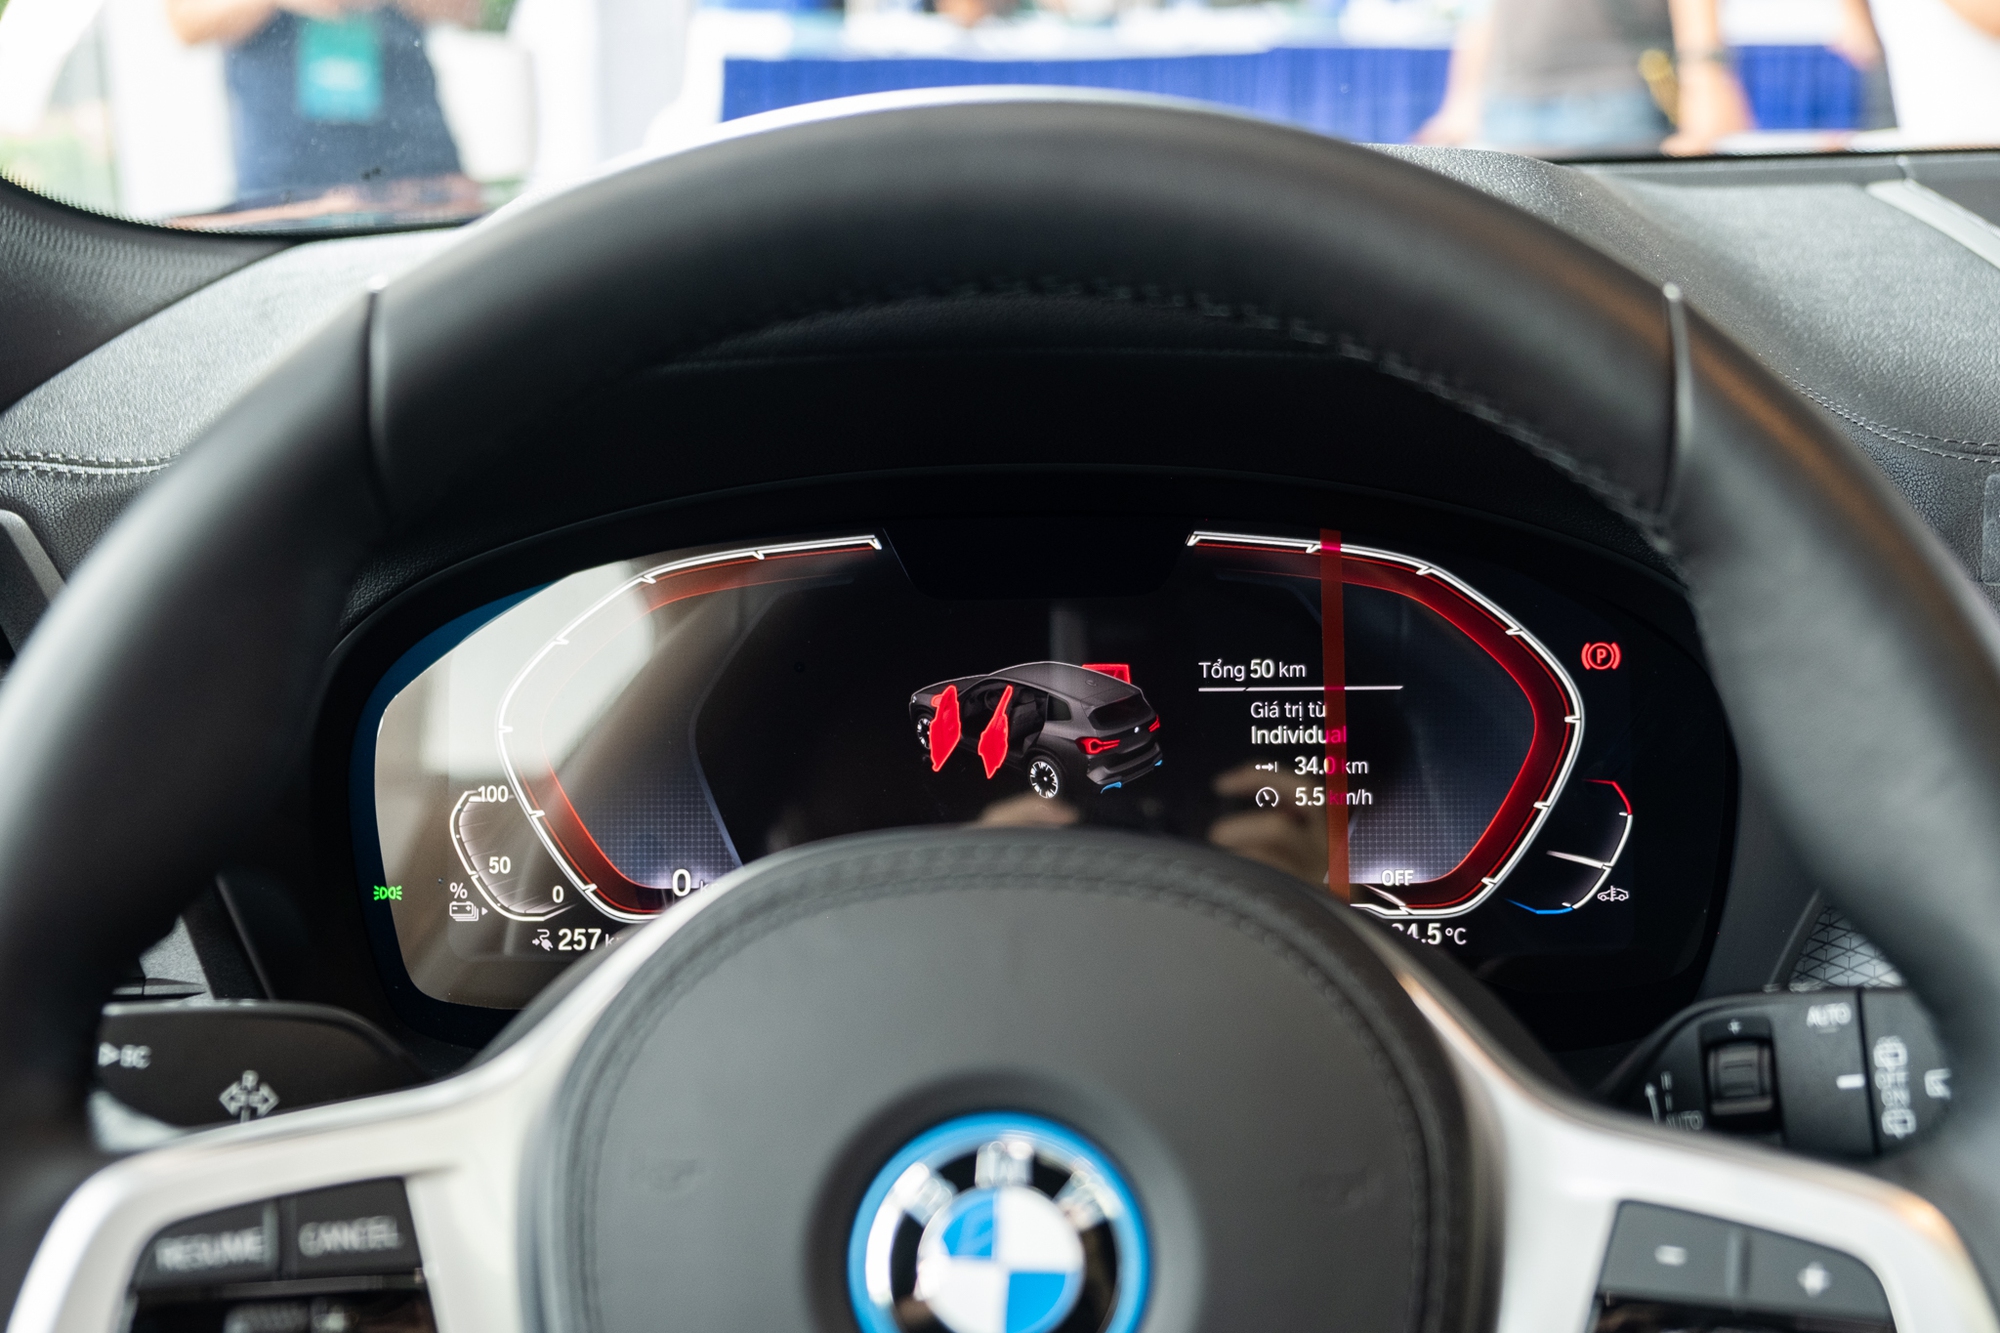 BMW iX3 ra mắt Việt Nam: Giá gần 3,5 tỷ, mạnh hơn, cao cấp hơn X3 lắp ráp, sạc 1 lần dư sức chạy TP. HCM - Nha Trang - Ảnh 4.